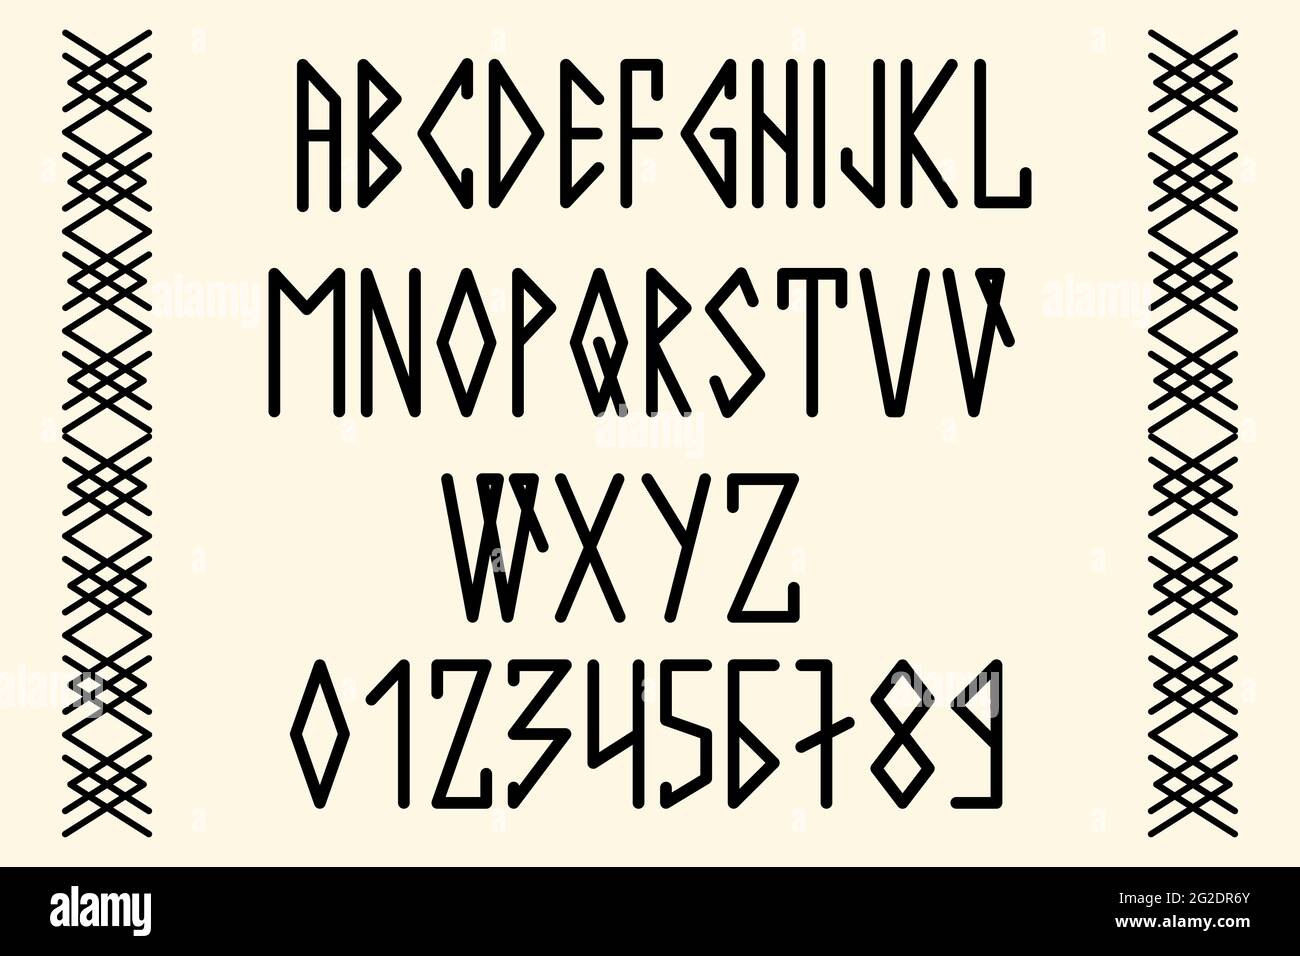 Texte scandinave, en majuscules dans le style des runes nordiques. Design moderne. Une police de rune magique dans le style ethnique des peuples du Nord Illustration de Vecteur